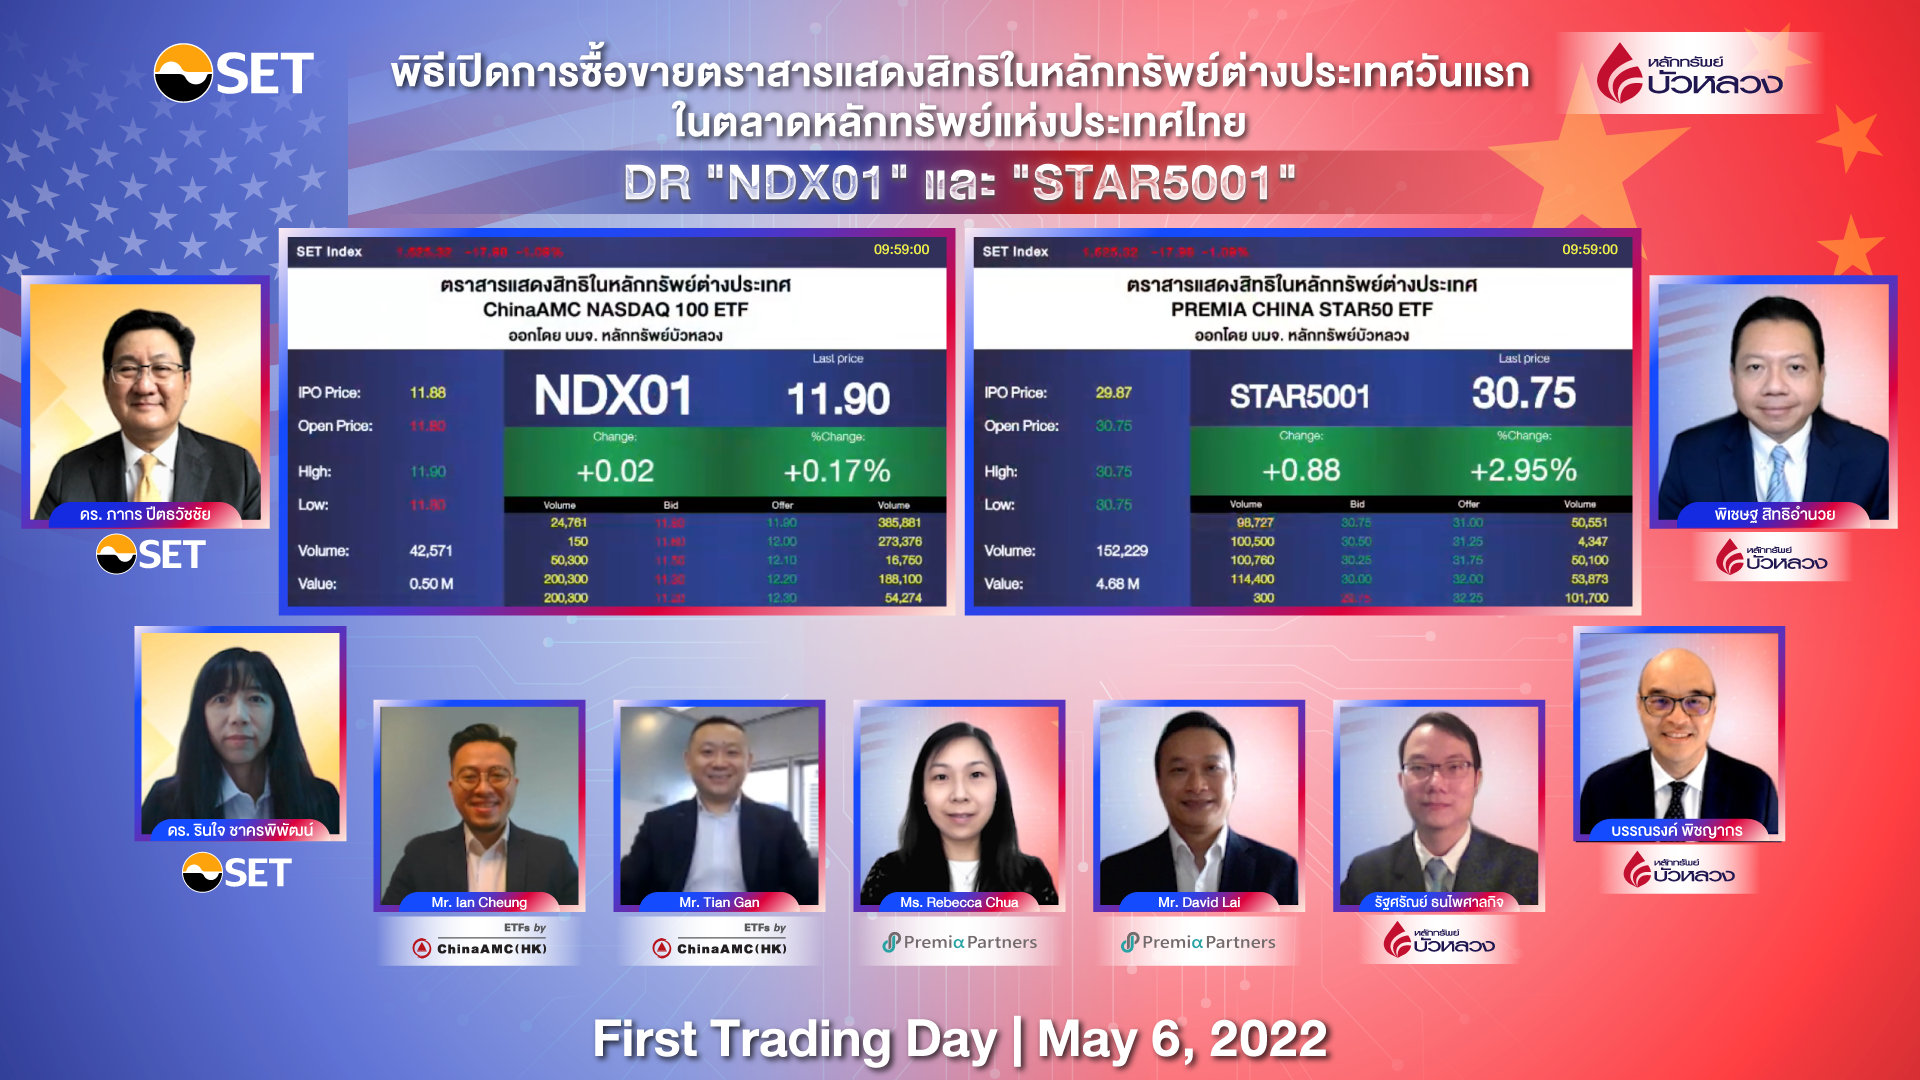 DR "NDX01" และ DR "STAR5001" เริ่มซื้อขายในตลาดหลักทรัพย์ฯ วันแรก